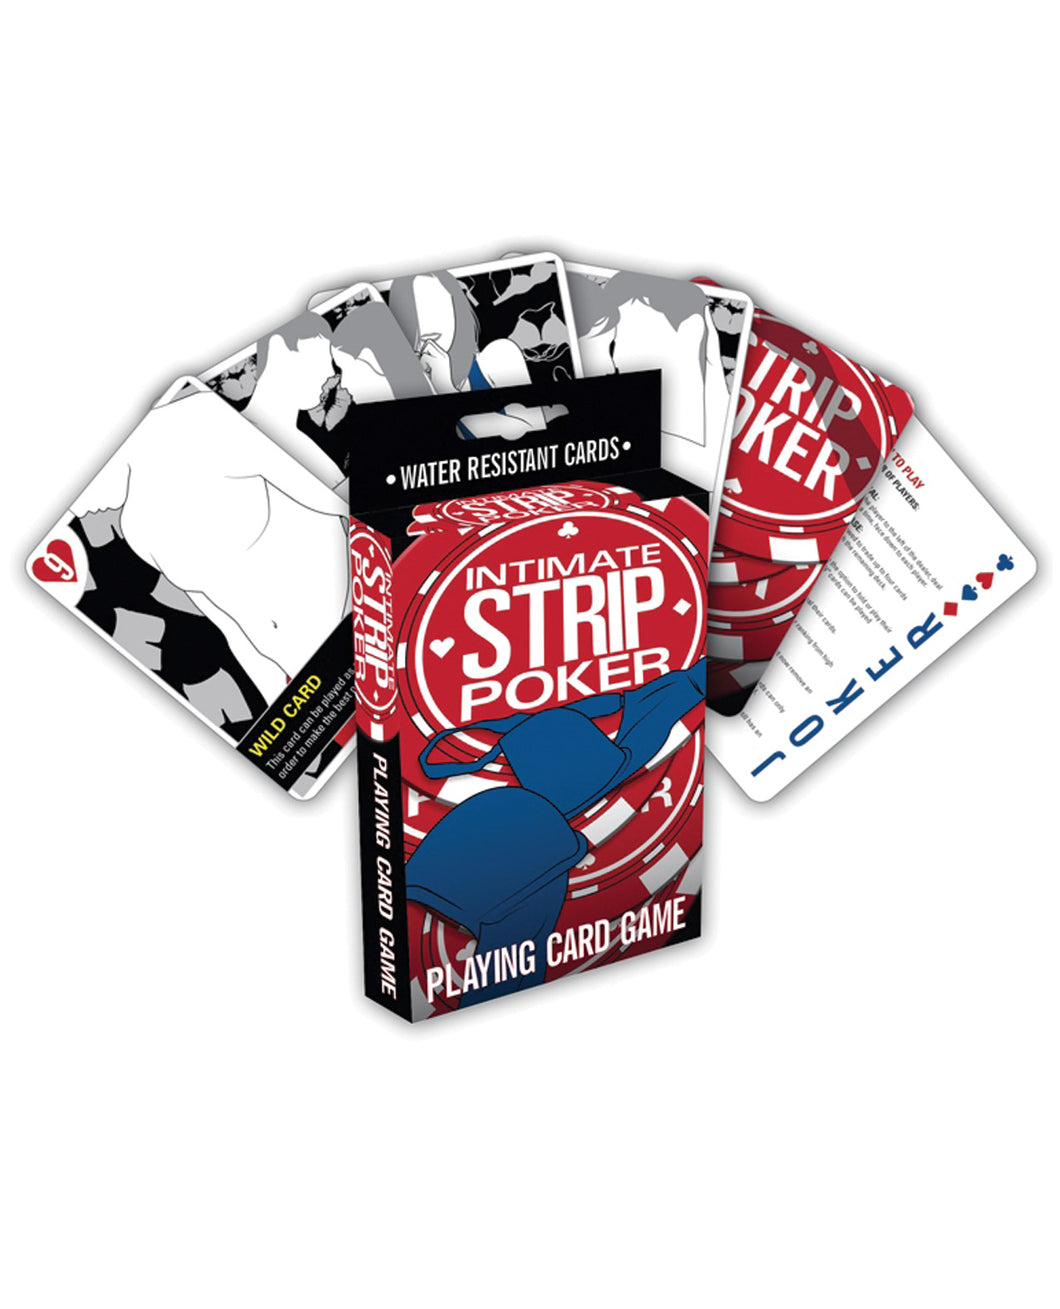 Intimate Strip Poker Playing Card Game